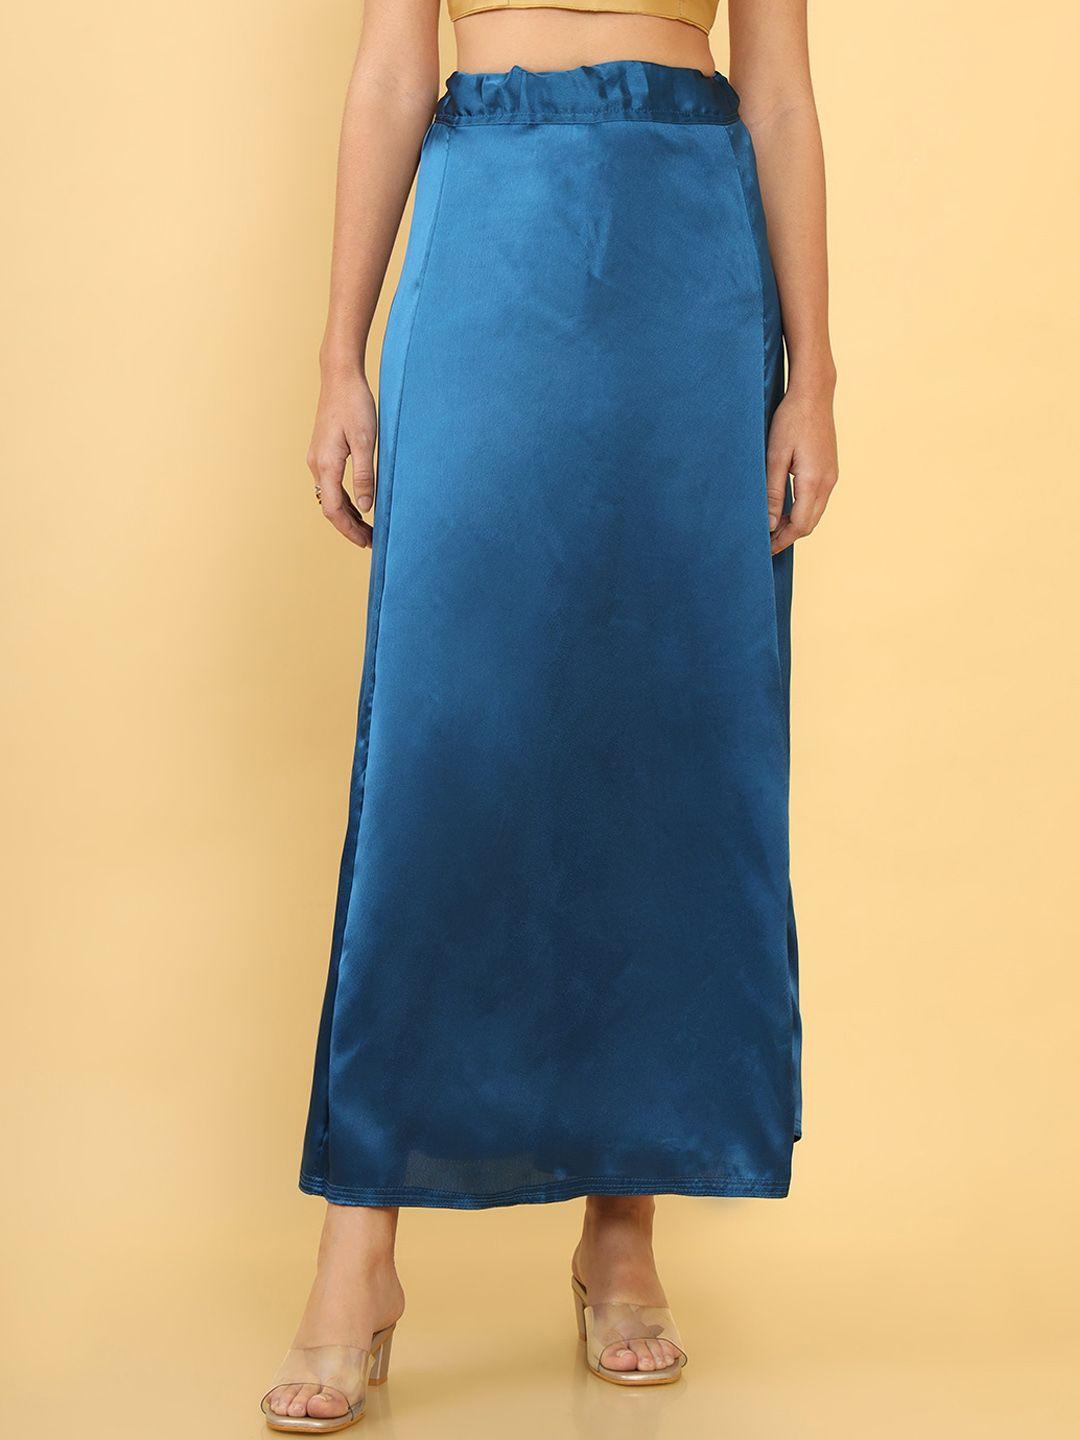 soch women blue solid nylon petticoat shapewear